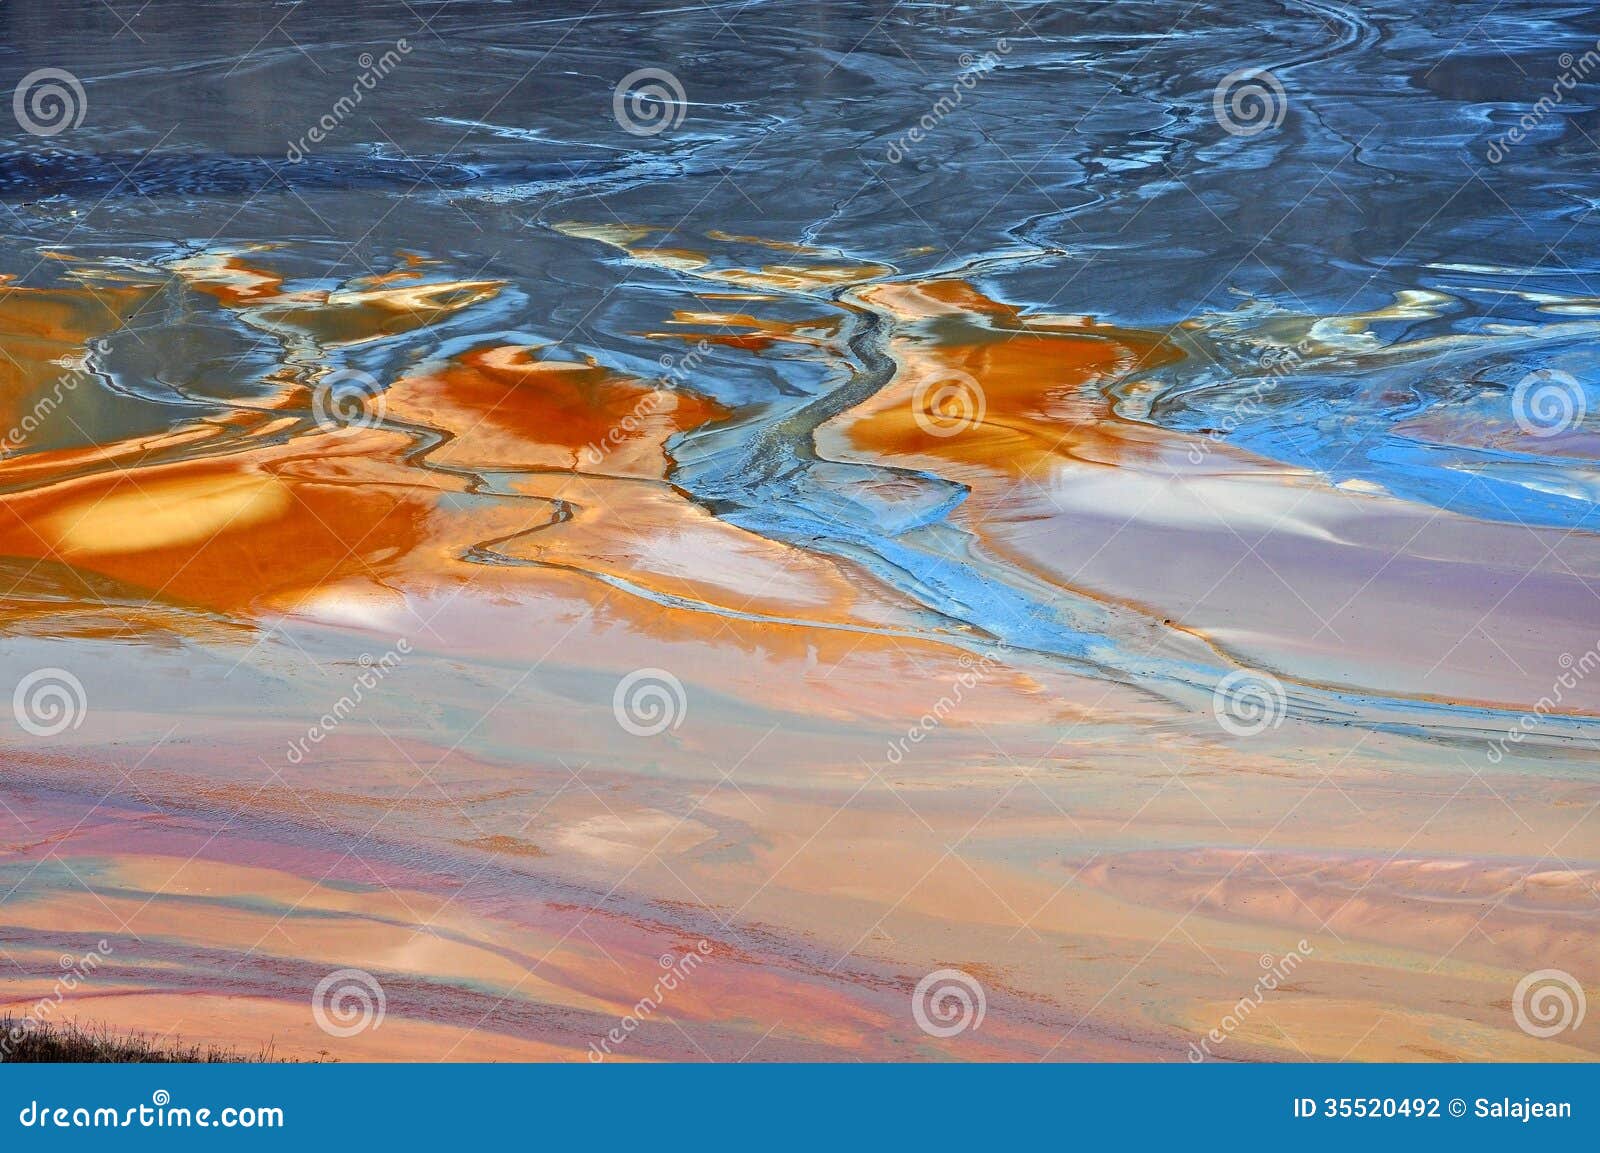 copper mine water contamination in geamana, romania